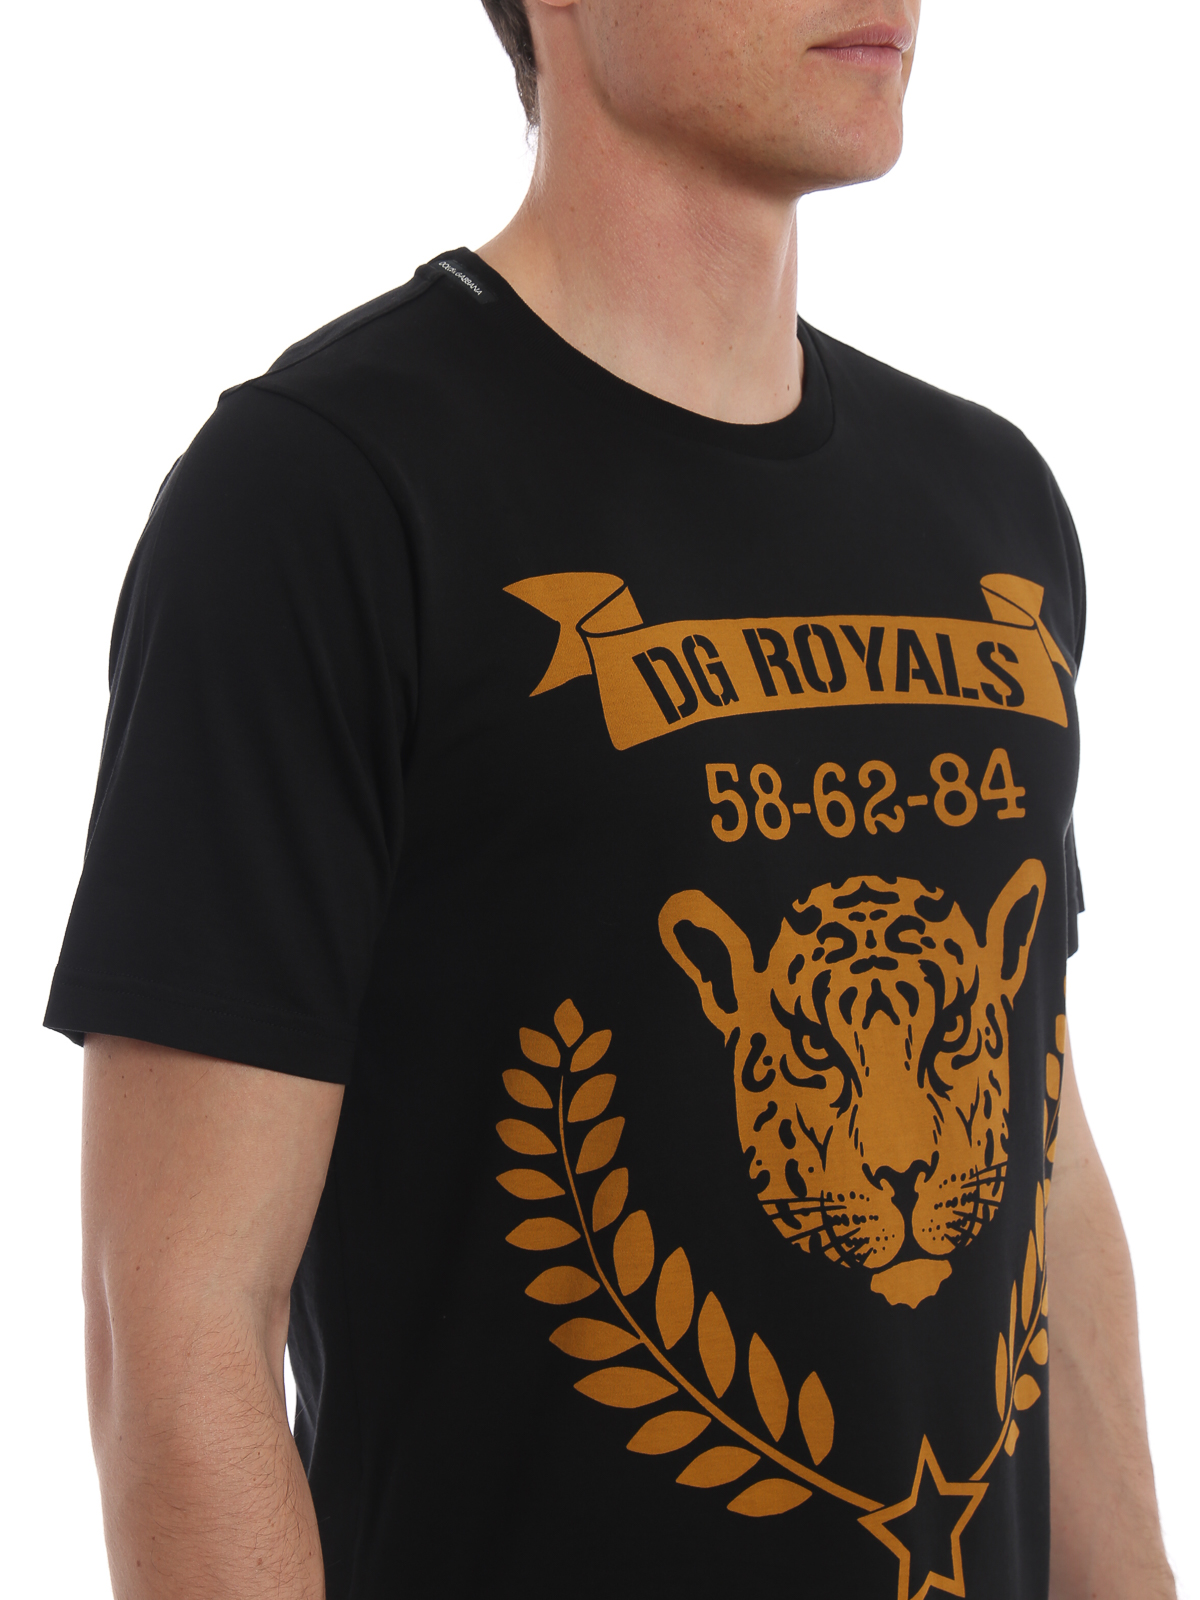 dg royals t shirt